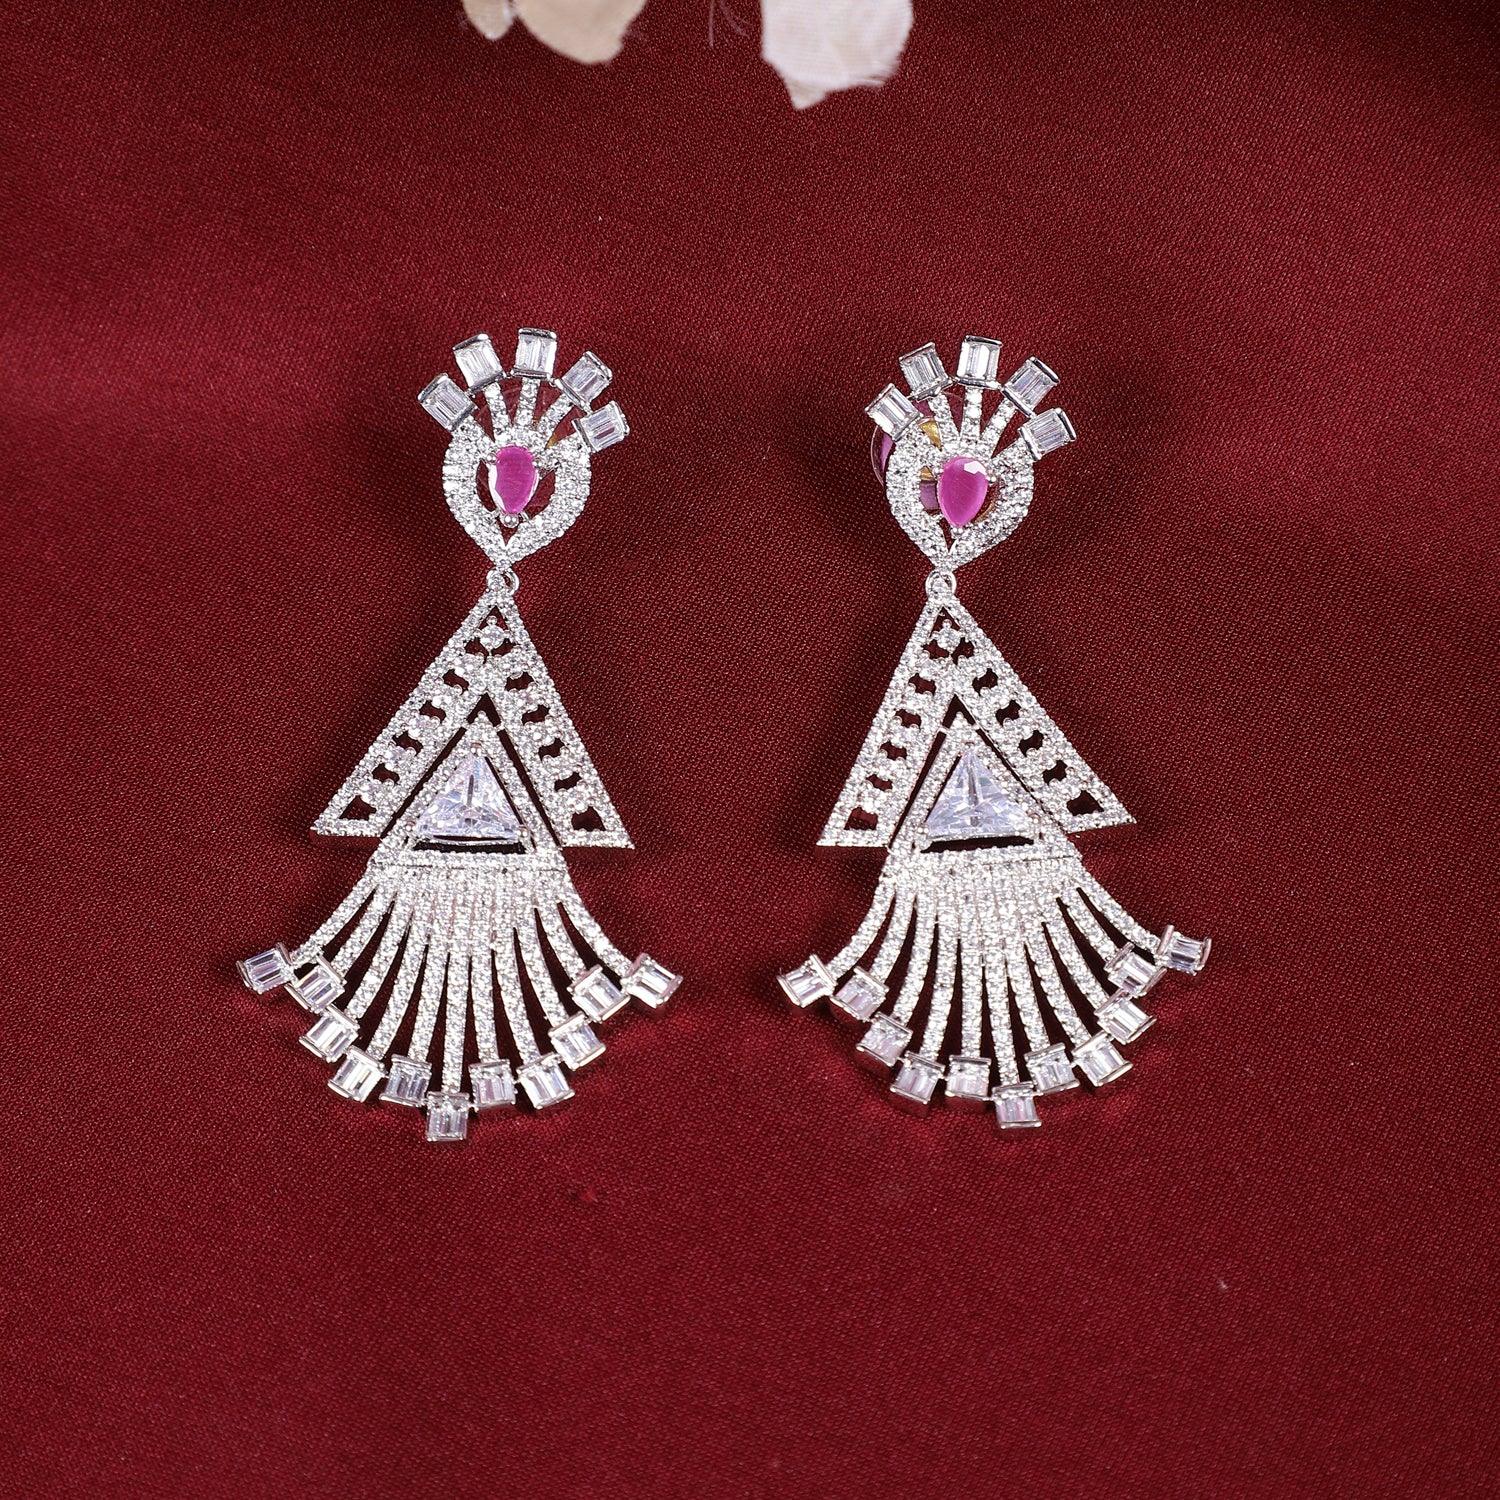 Designer Style Pink Silver American Diamond Stones Dangler Earrings for Women - Steorra Jewels